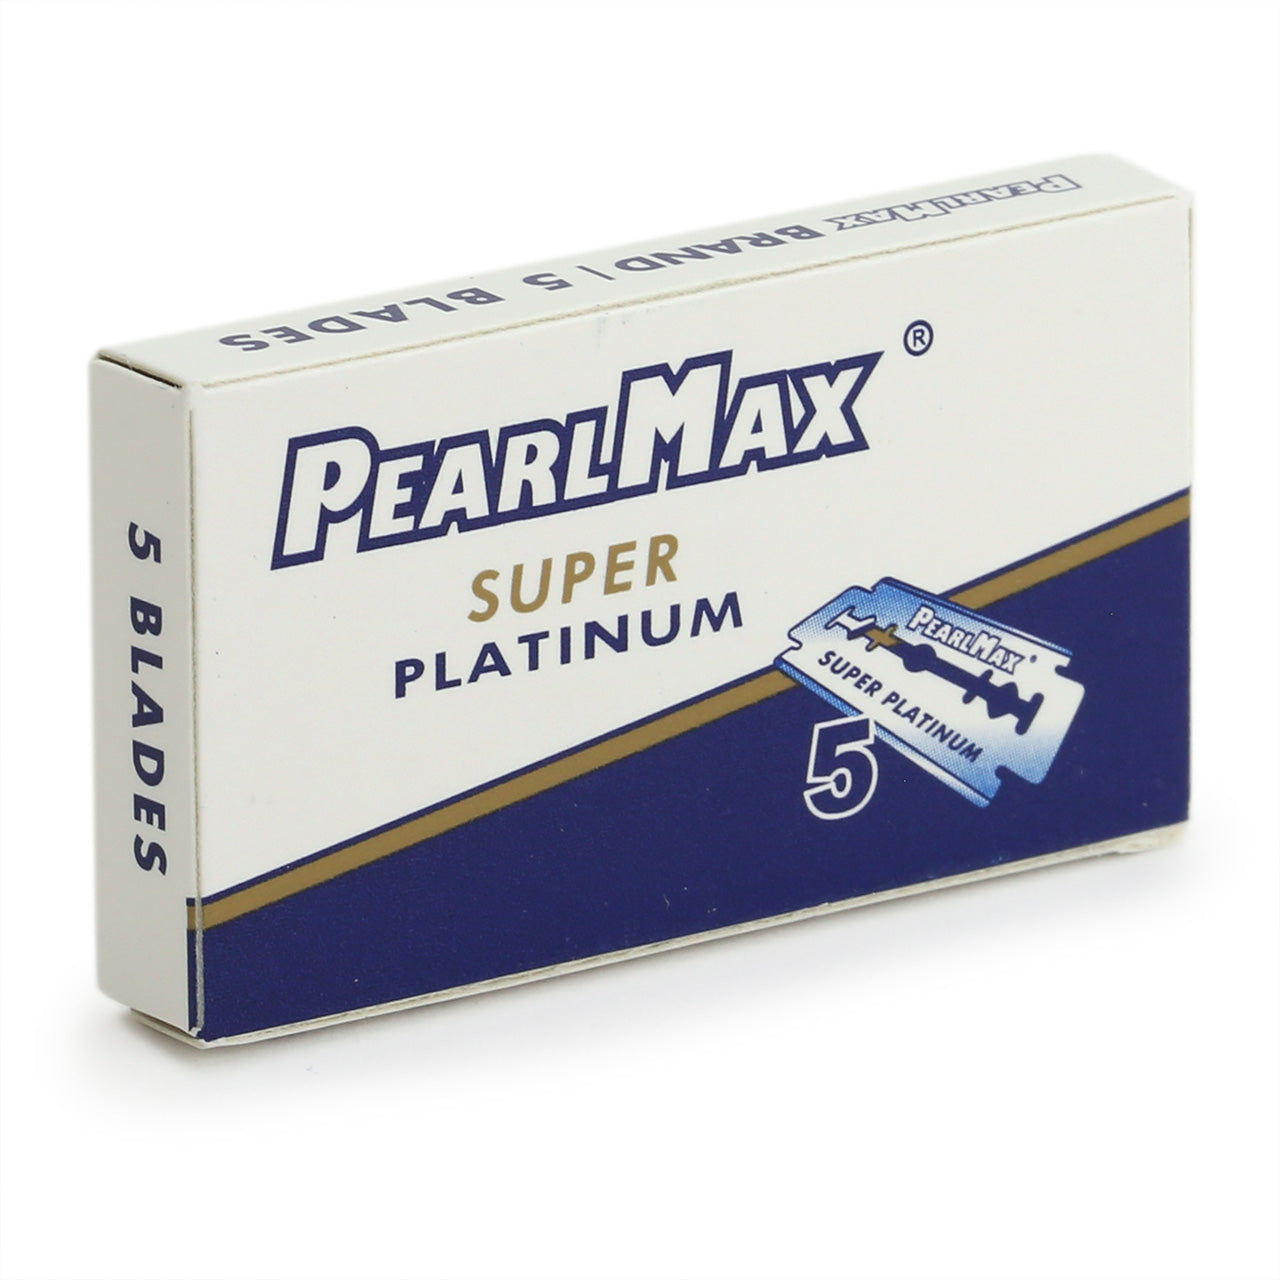 A tuck of five PearlMax double edge Razor Blades